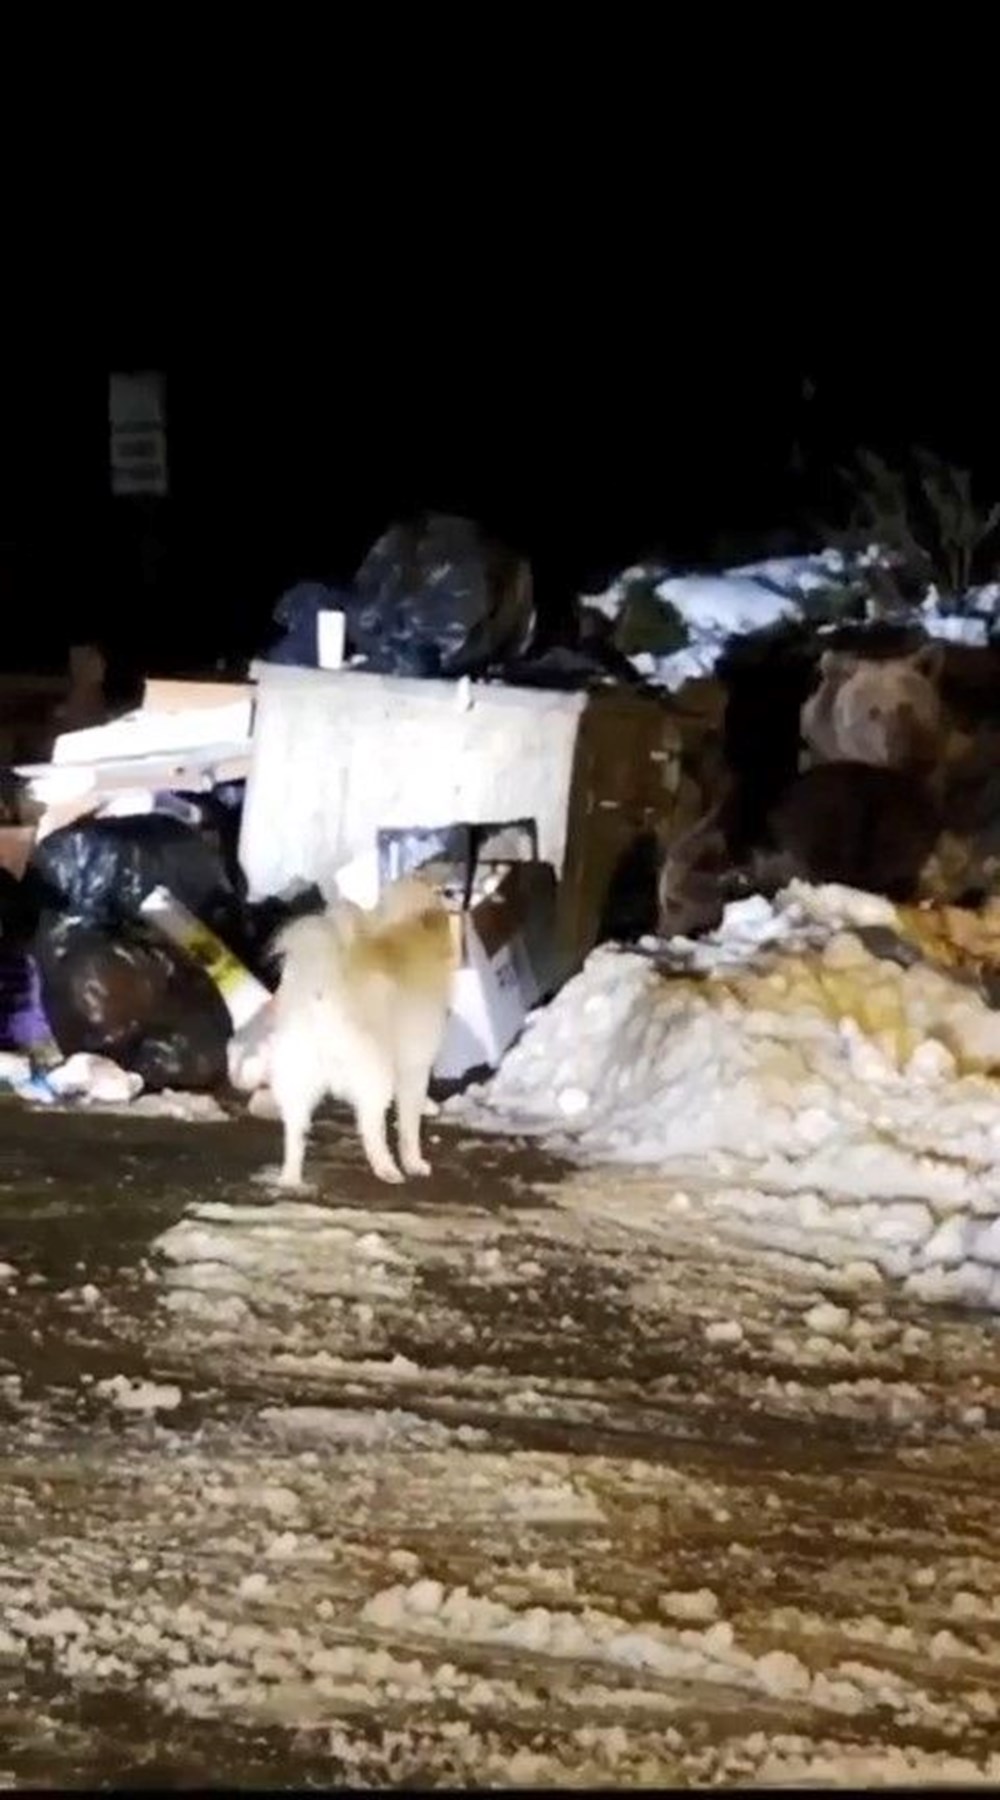 Uludağ’da kış uykusuna dalamayan ayı ailesi kendilerini
rahatsız eden köpeğe saldırdı - 1